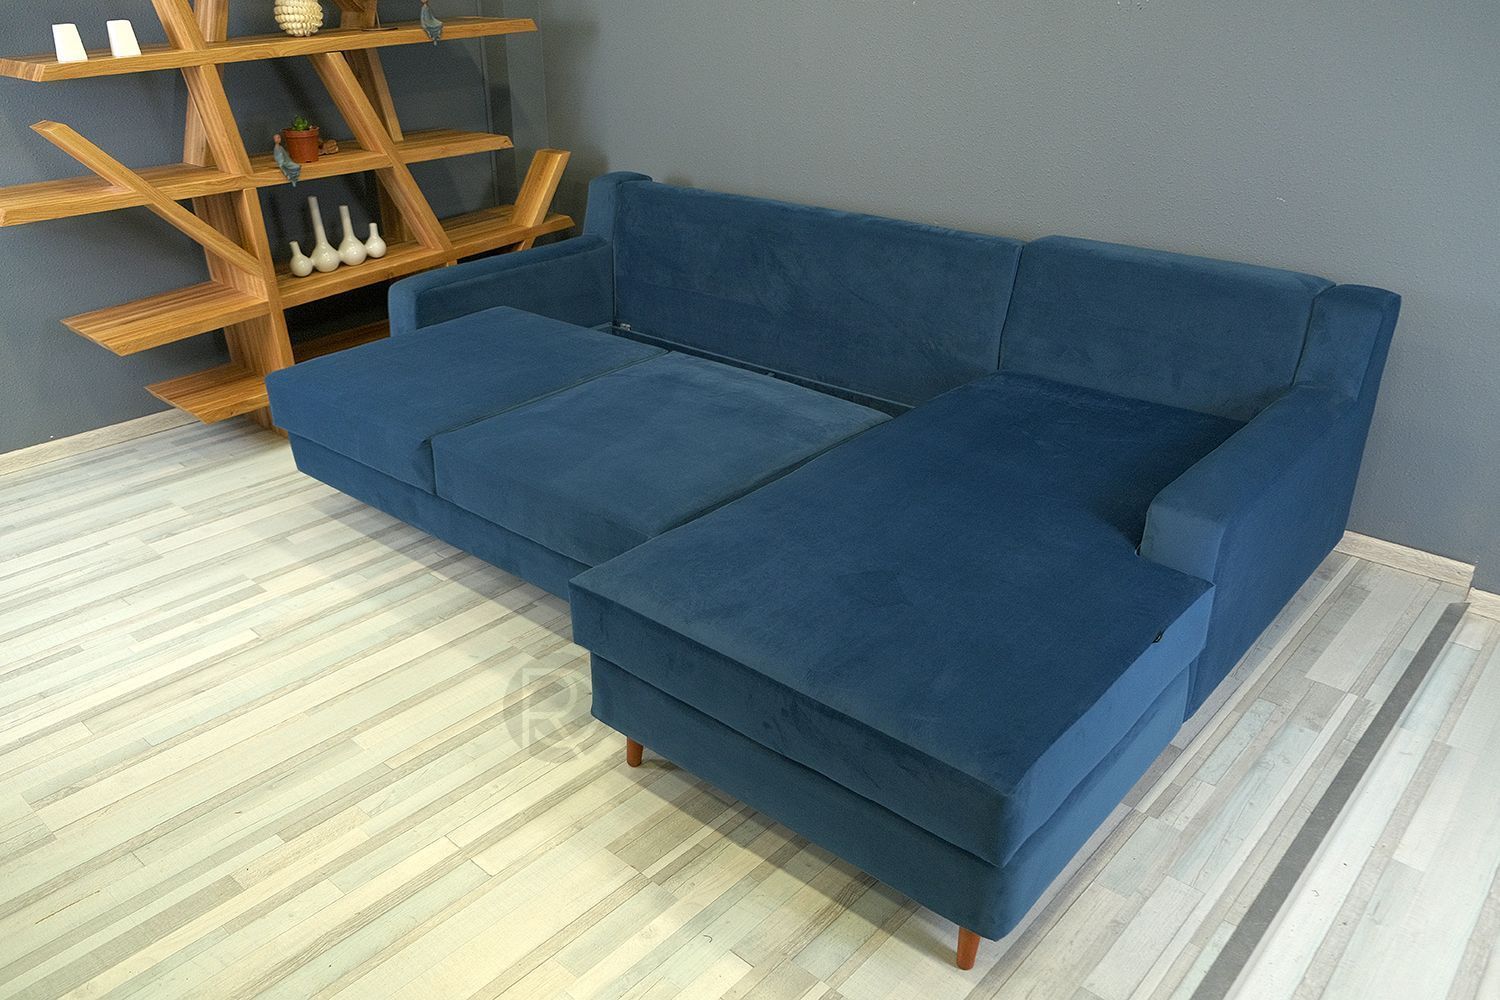 Sofa FLAVIO by Romatti